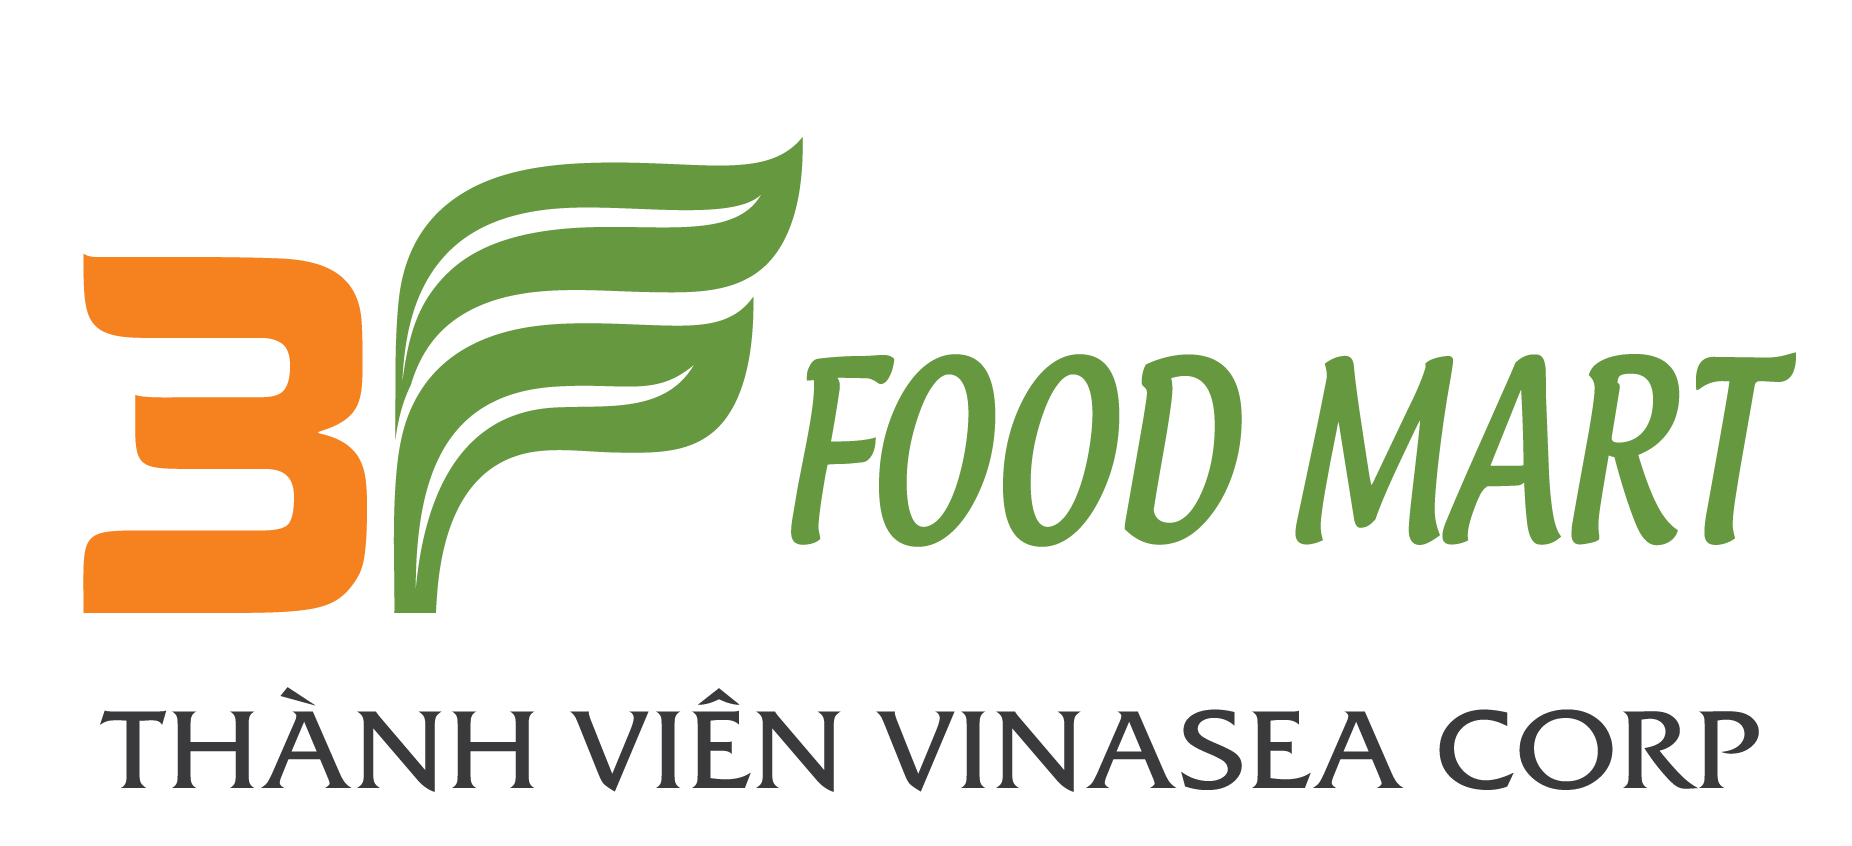 3F Food Mart / Cty CP Thực Phẩm Biển Việt